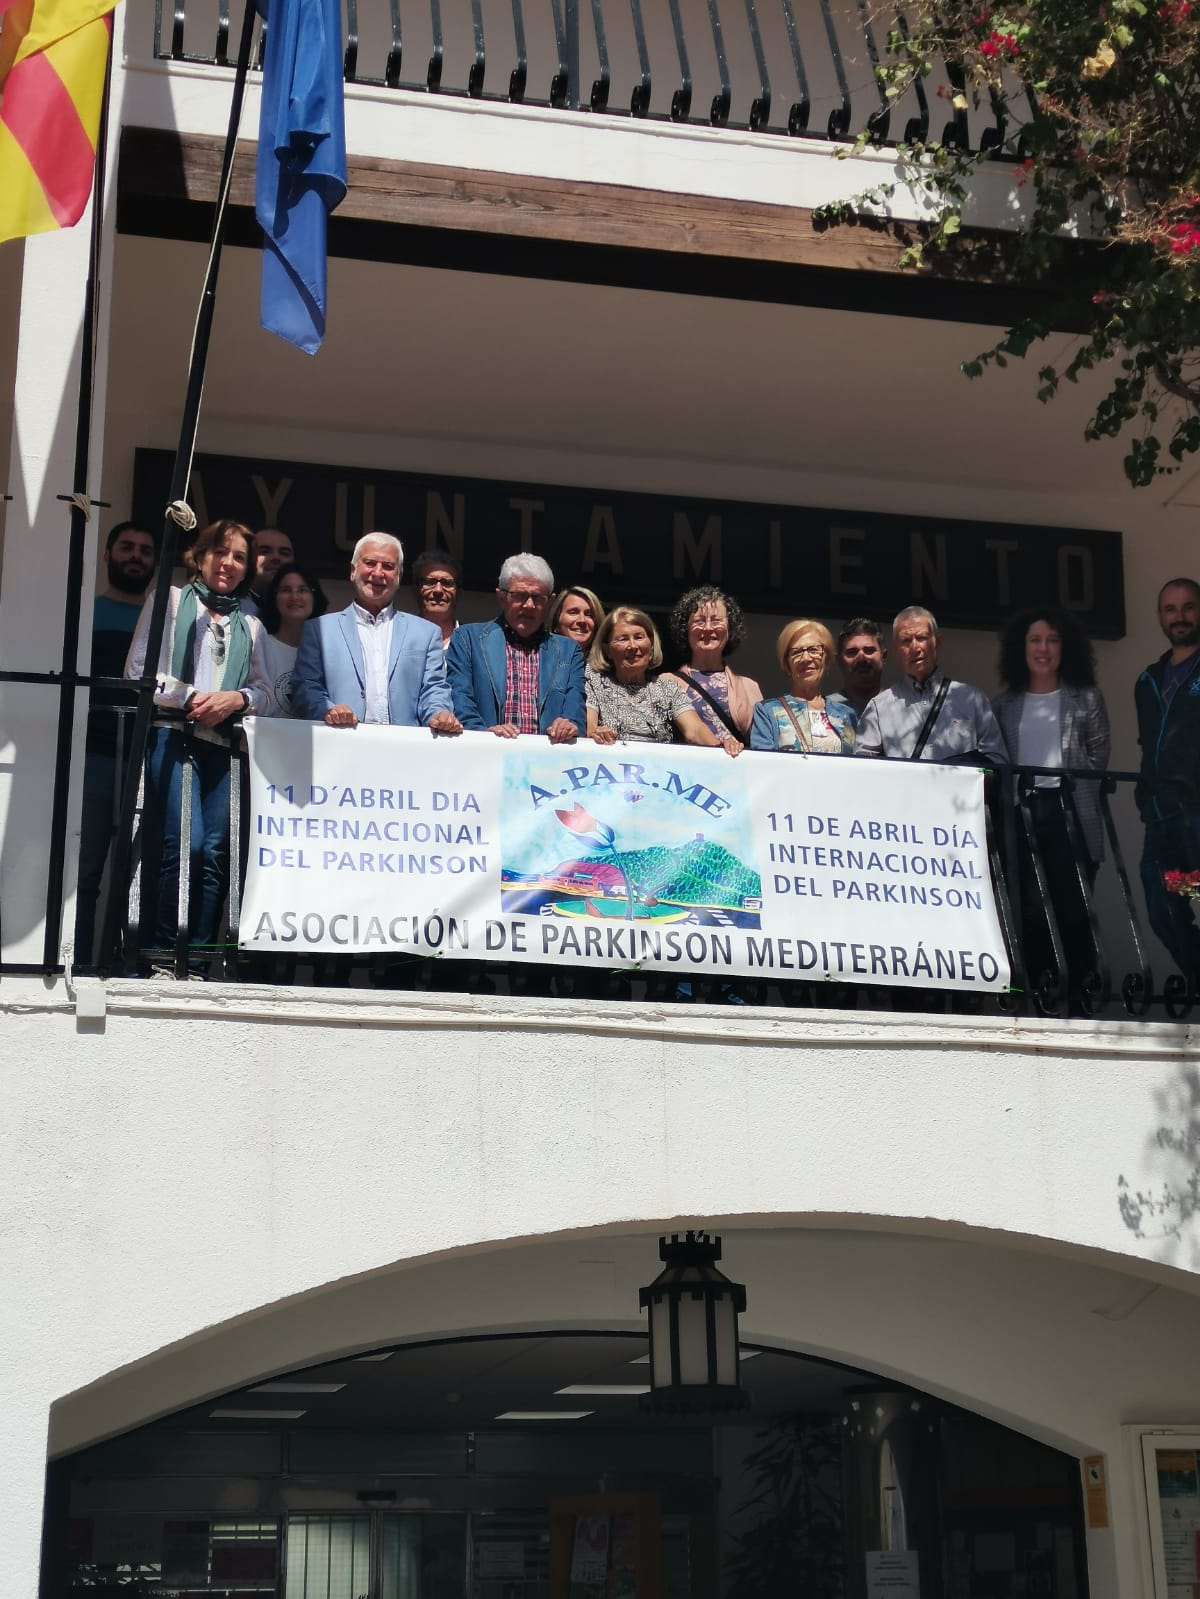 Altea conmemora el Día Internacional de Parkinson. El Ayuntamiento y la Asociación de Parkinson Mediterráneo han mostrado su apoyo a afectados y familias colgando una pancarta reivindicativa en los balcones del Consistorio.